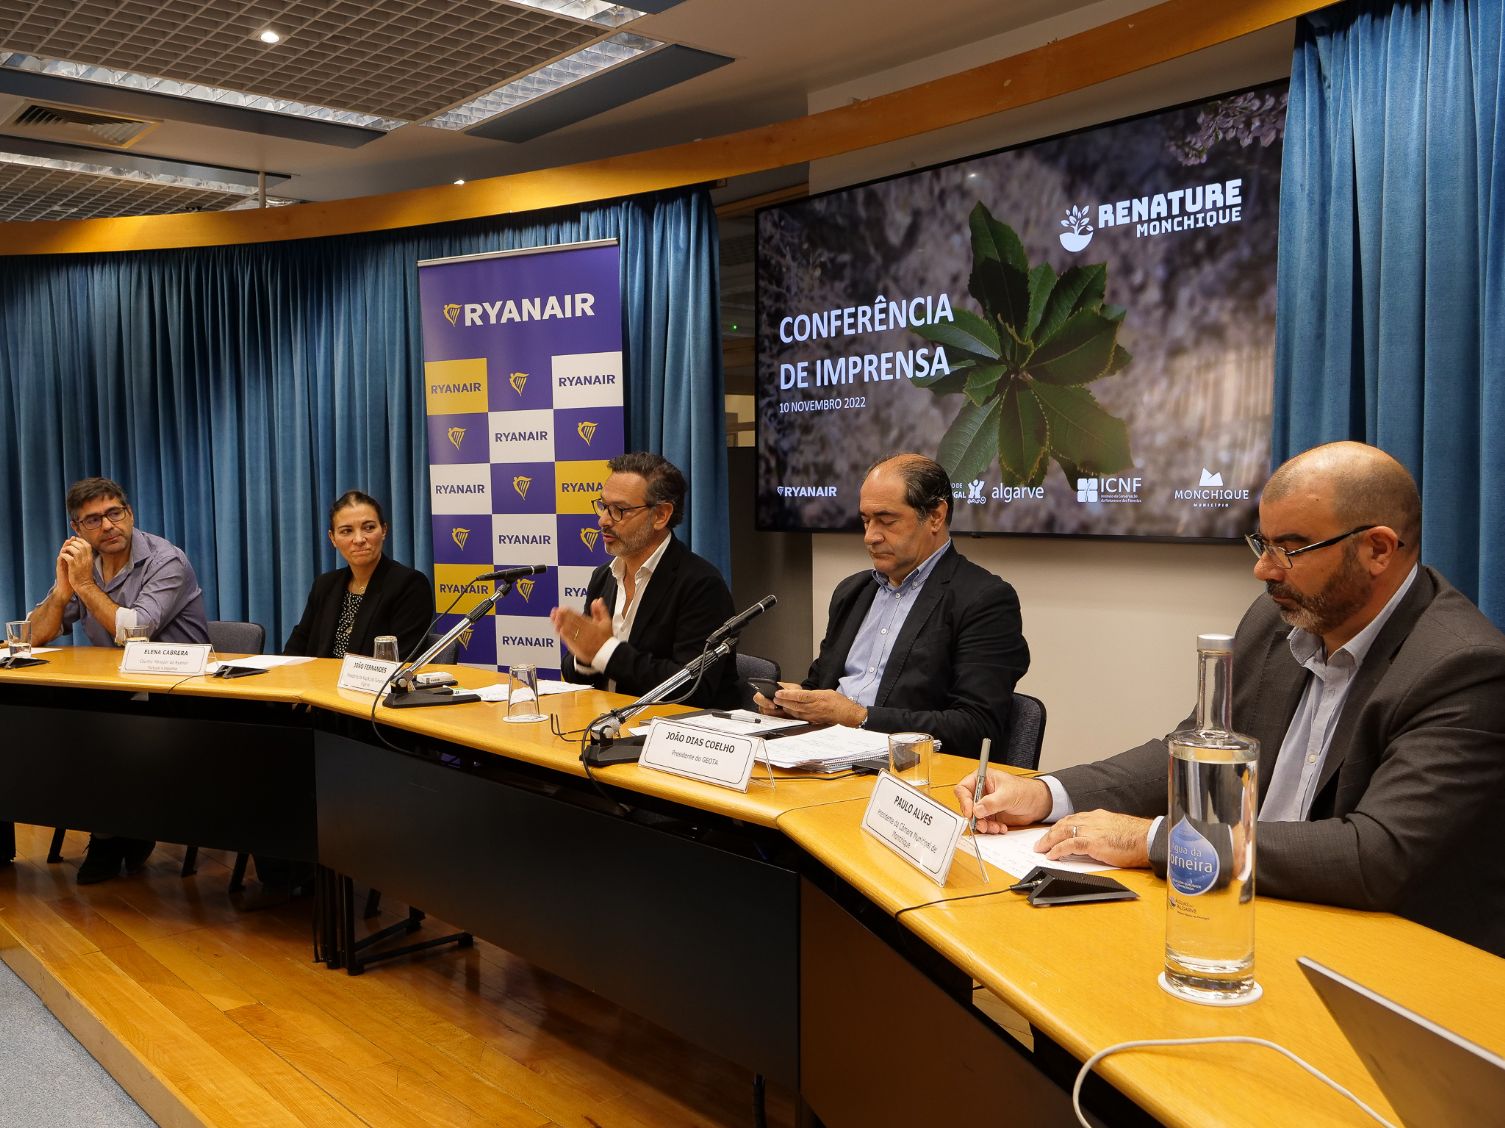 Relançamento Renature Monchique: Projecto vai plantar mais 75 mil árvores na Serra Algarvia até Março de 2023